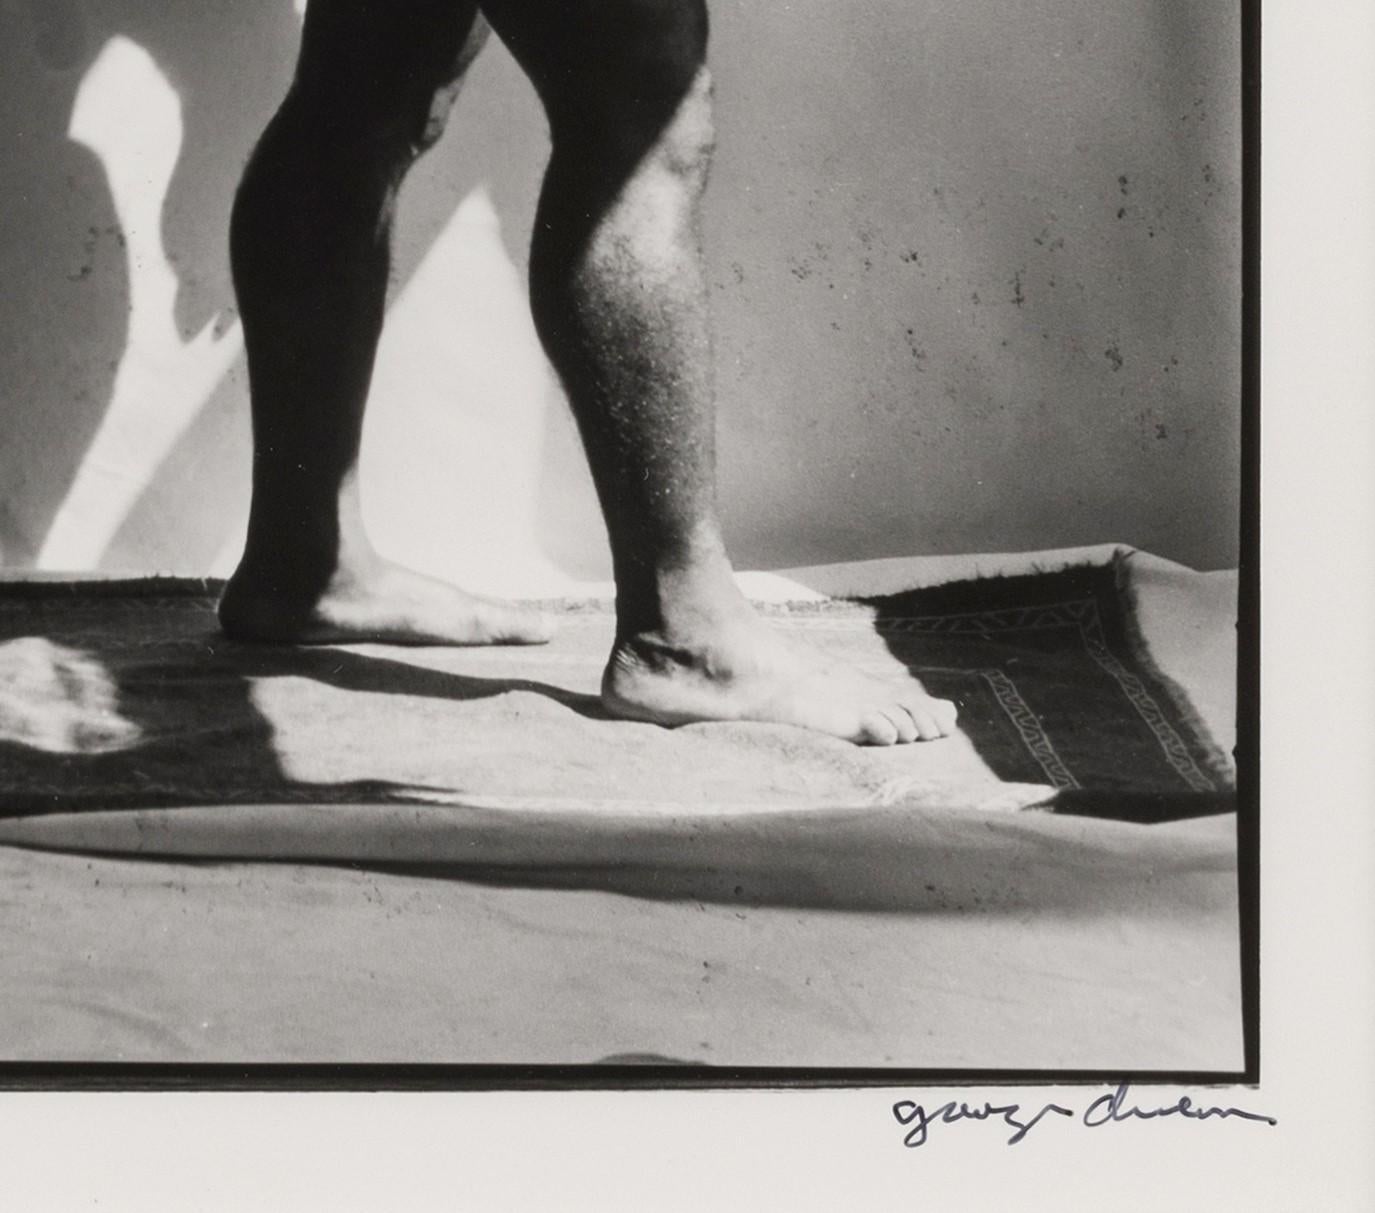 Silberdruck, signiert und betitelt (recto), 35,5 x 28 cm (Blattgröße), (48cm x 42cm gerahmt). 

George Valentine Dureau war ein amerikanischer Künstler, dessen lange Karriere vor allem durch Kohlezeichnungen und Schwarz-Weiß-Fotografien von armen